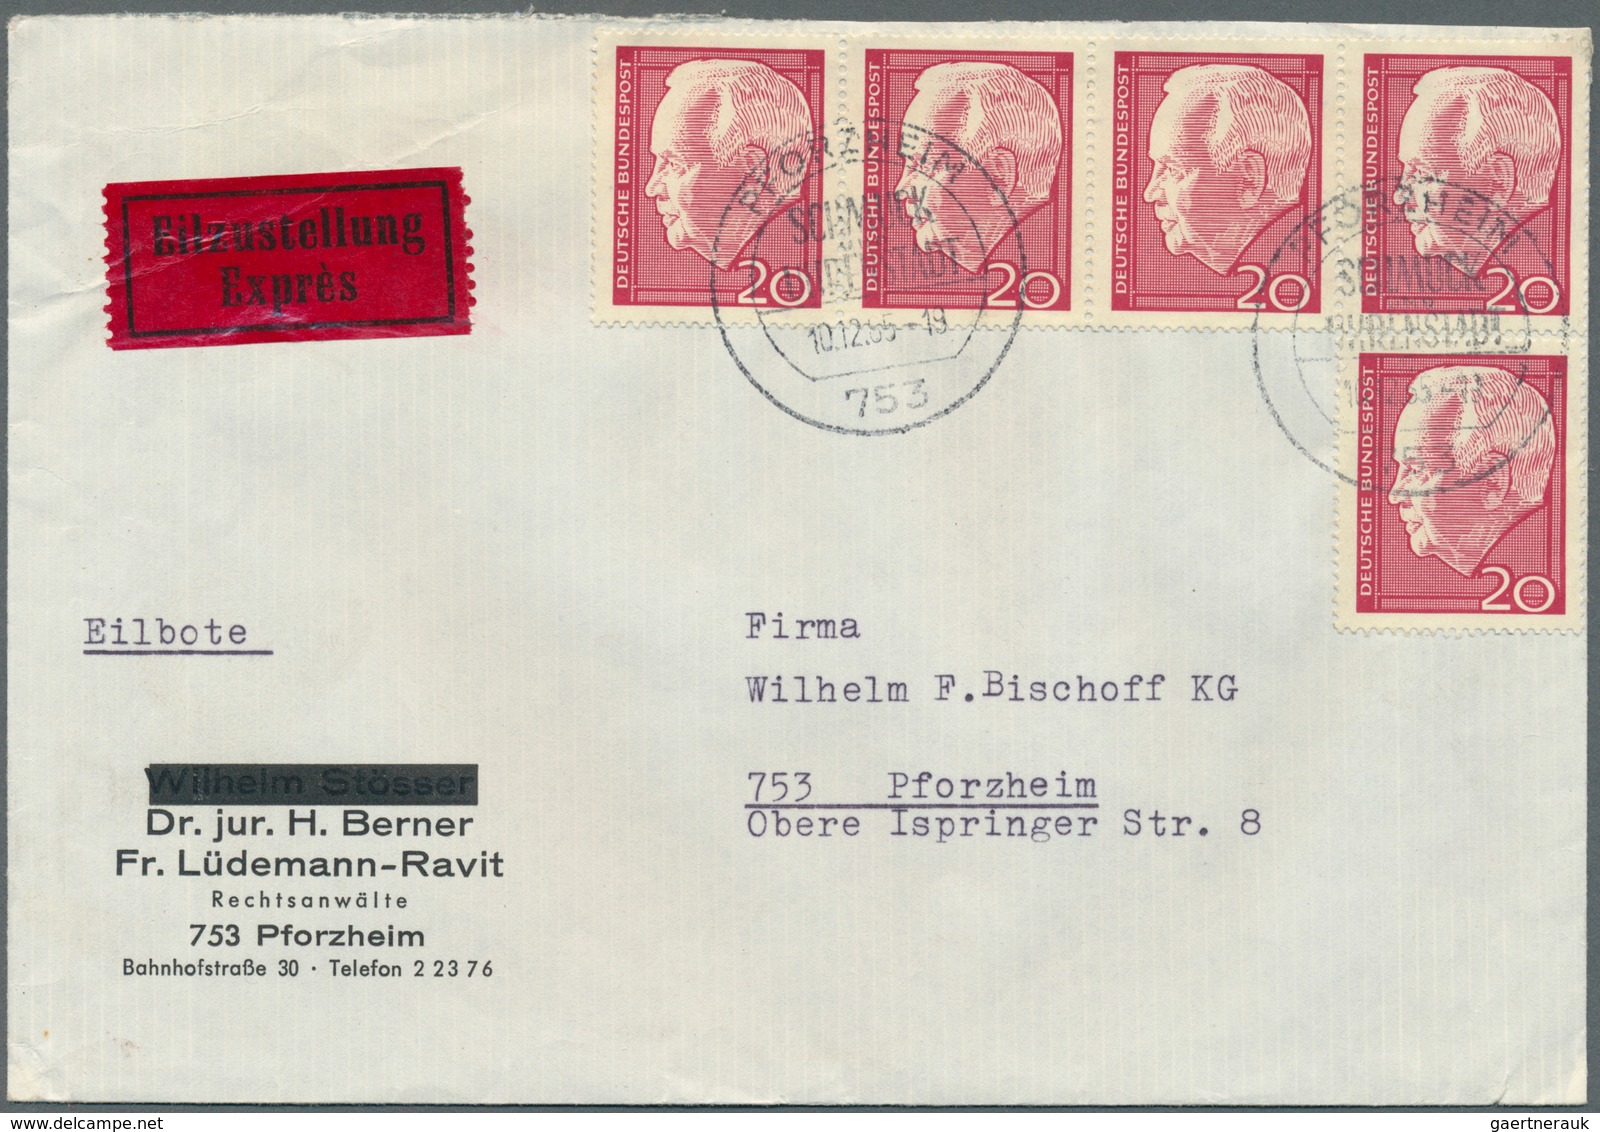 32768 Bundesrepublik Deutschland: 1961/1981, Posten von ca. 280 Briefen und Karten nur mit Sonder- /Zuschl